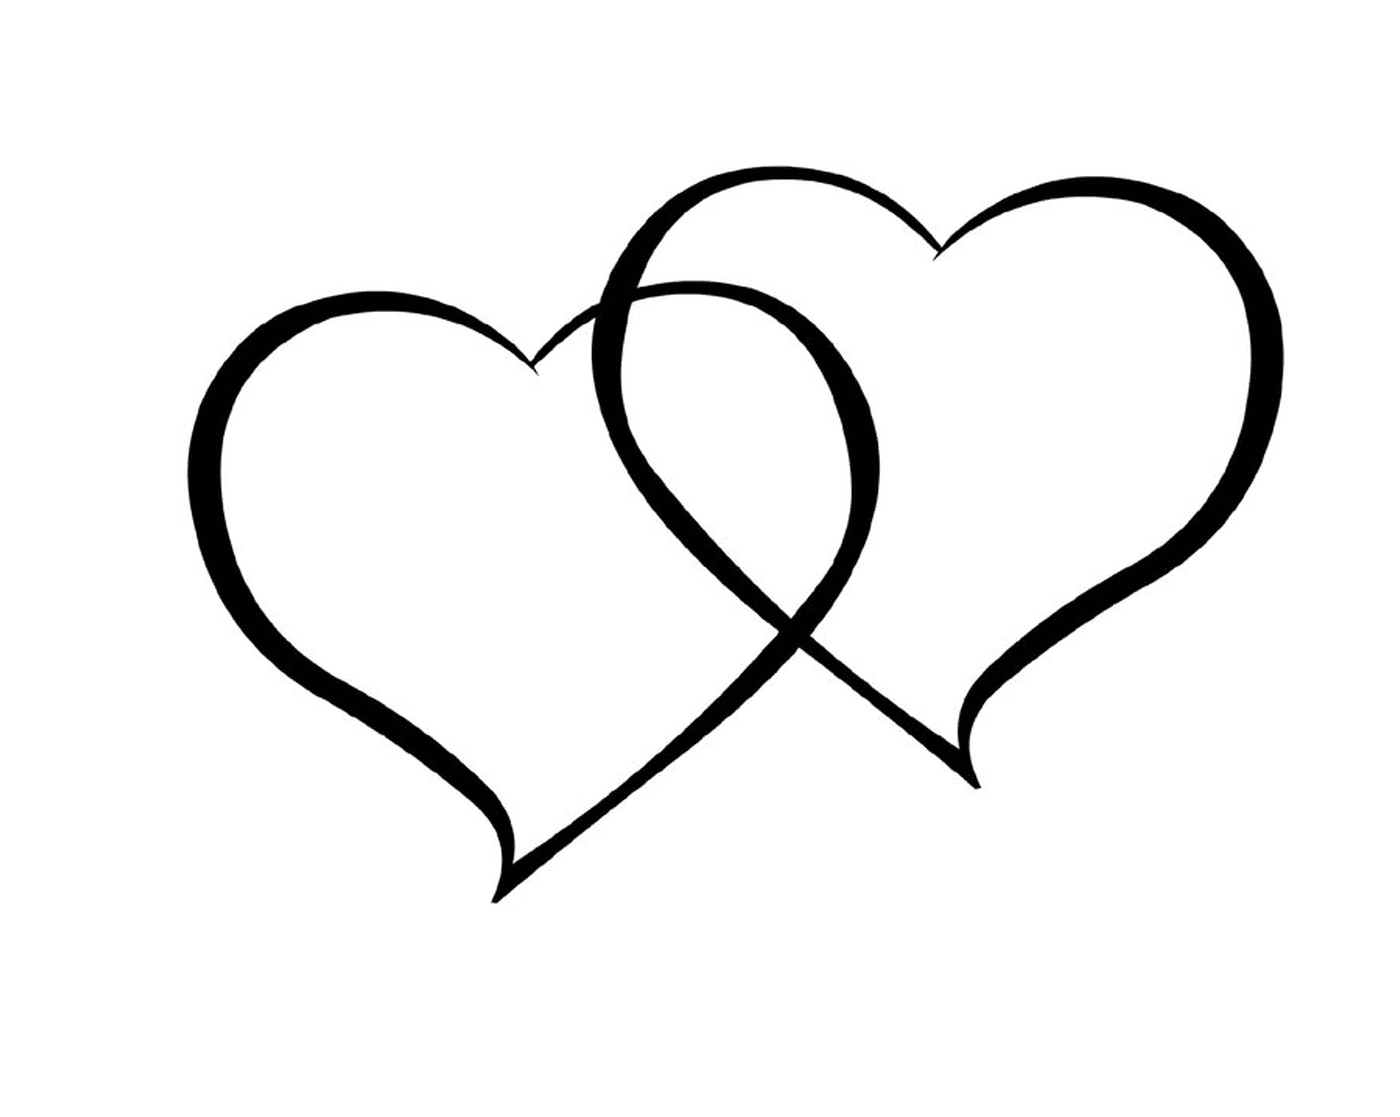  Два сердца, нарисованные чернилами на белом фоне 